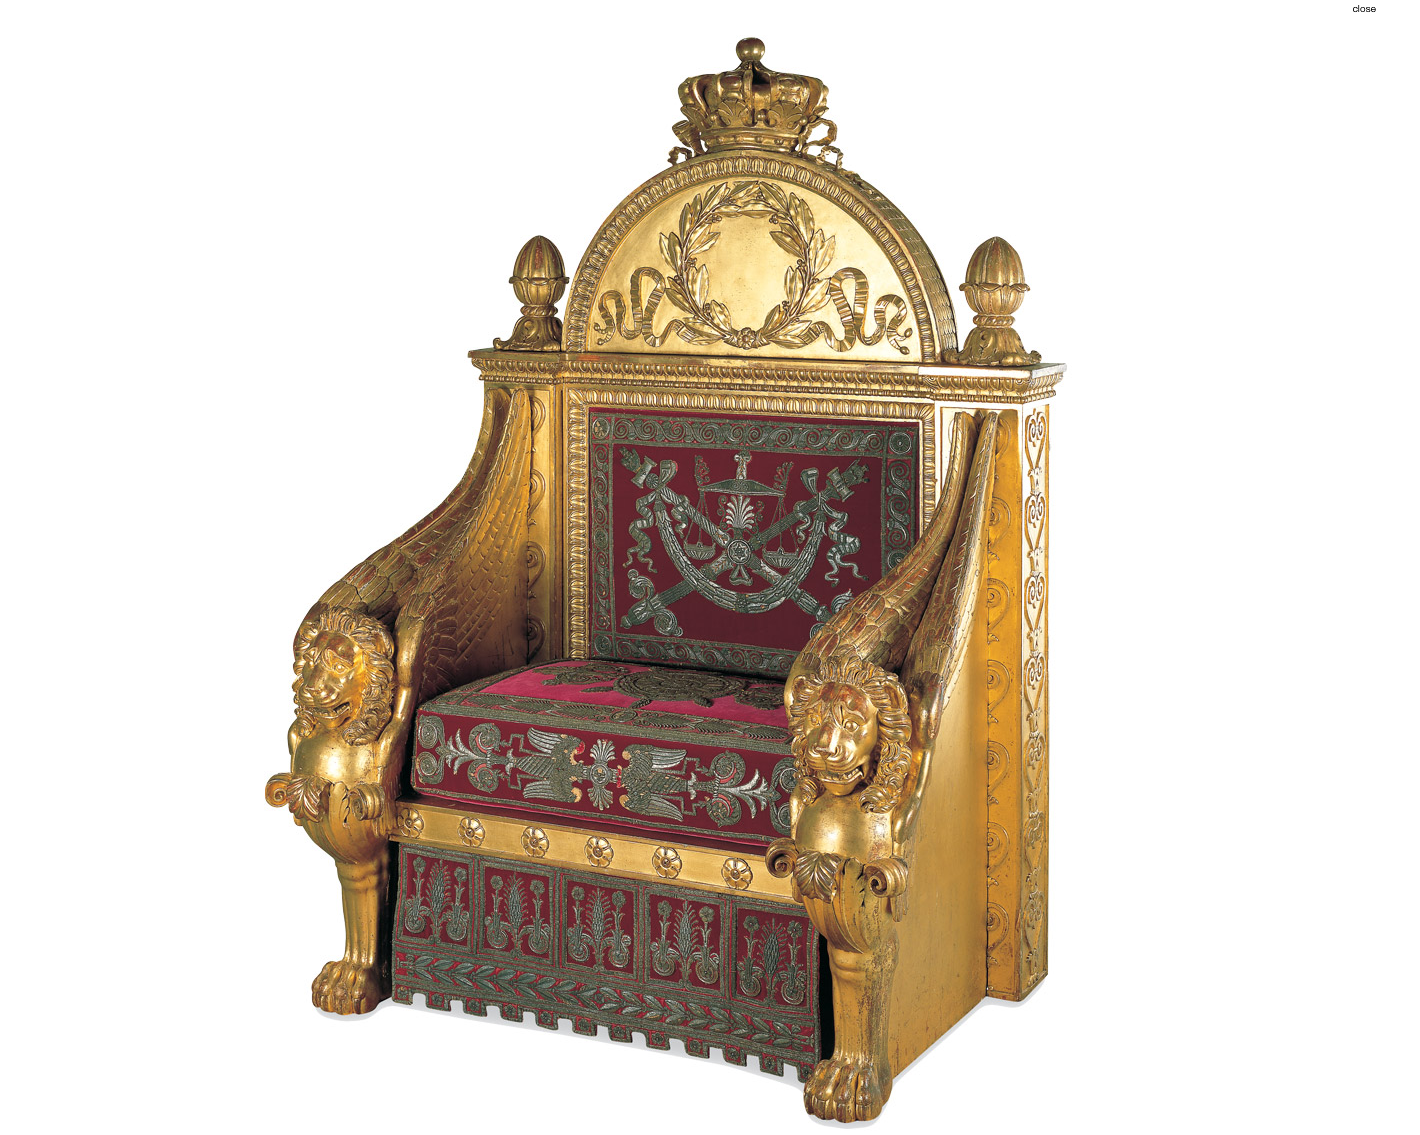 Napoleon's Throne by Bernard Poyet, François-Honoré-Georges Jacob-Desmalter, Augustin François André Picot - 1805 - 160 cm x 110 cm x 82 cm Musée des Arts Décoratifs